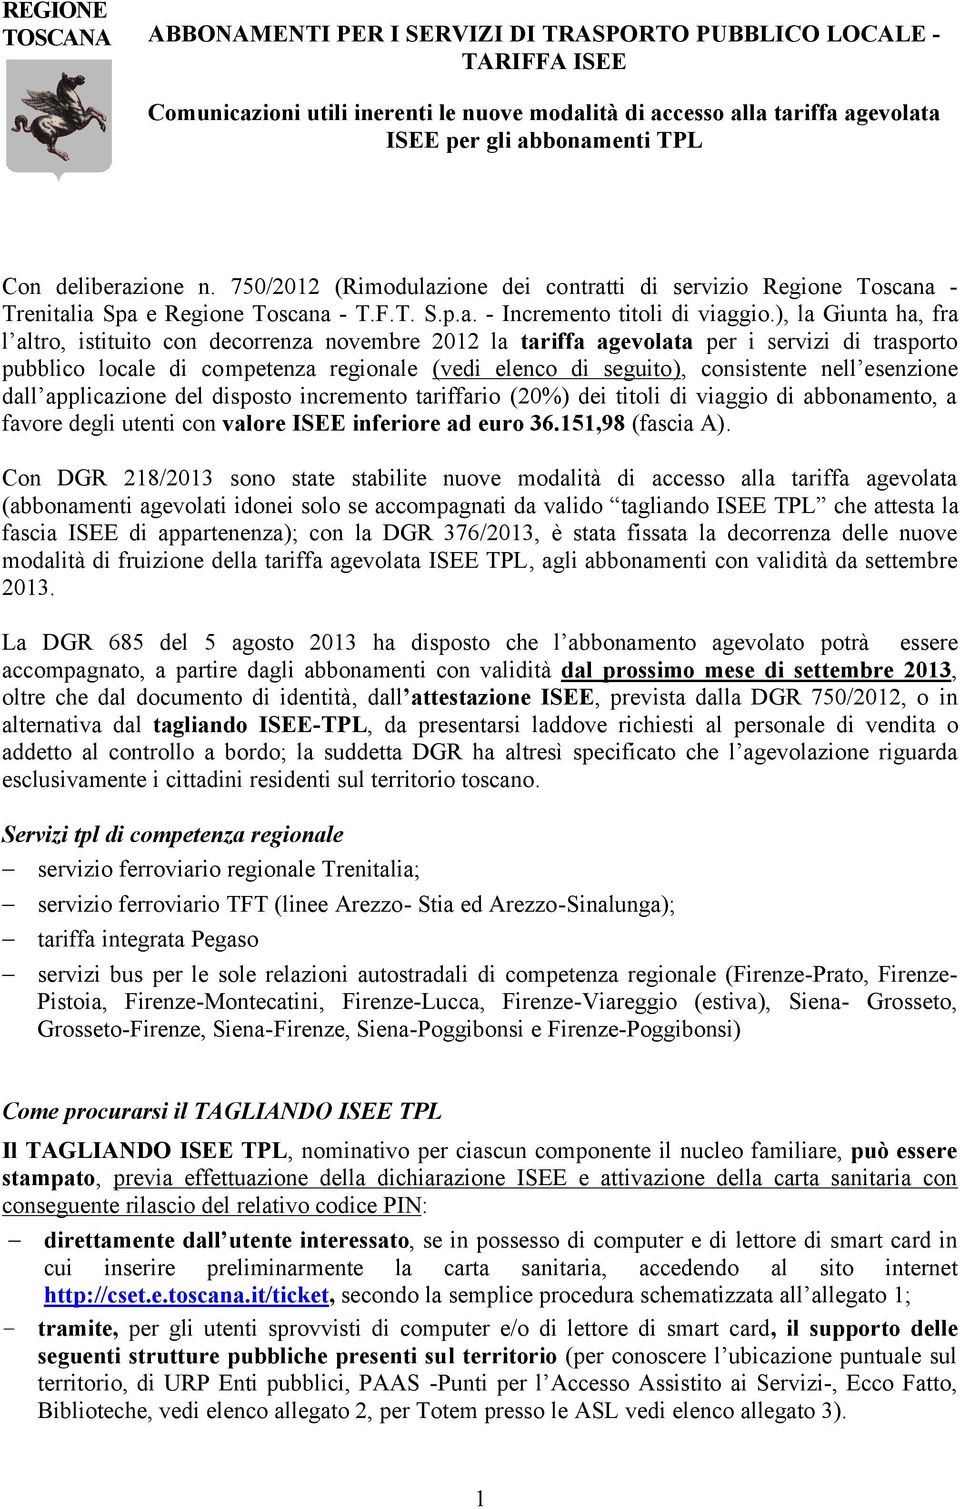 ), la Giunta ha, fra l altro, istituito con decorrenza novembre 2012 la tariffa agevolata per i servizi di trasporto pubblico locale di competenza regionale (vedi elenco di seguito), consistente nell